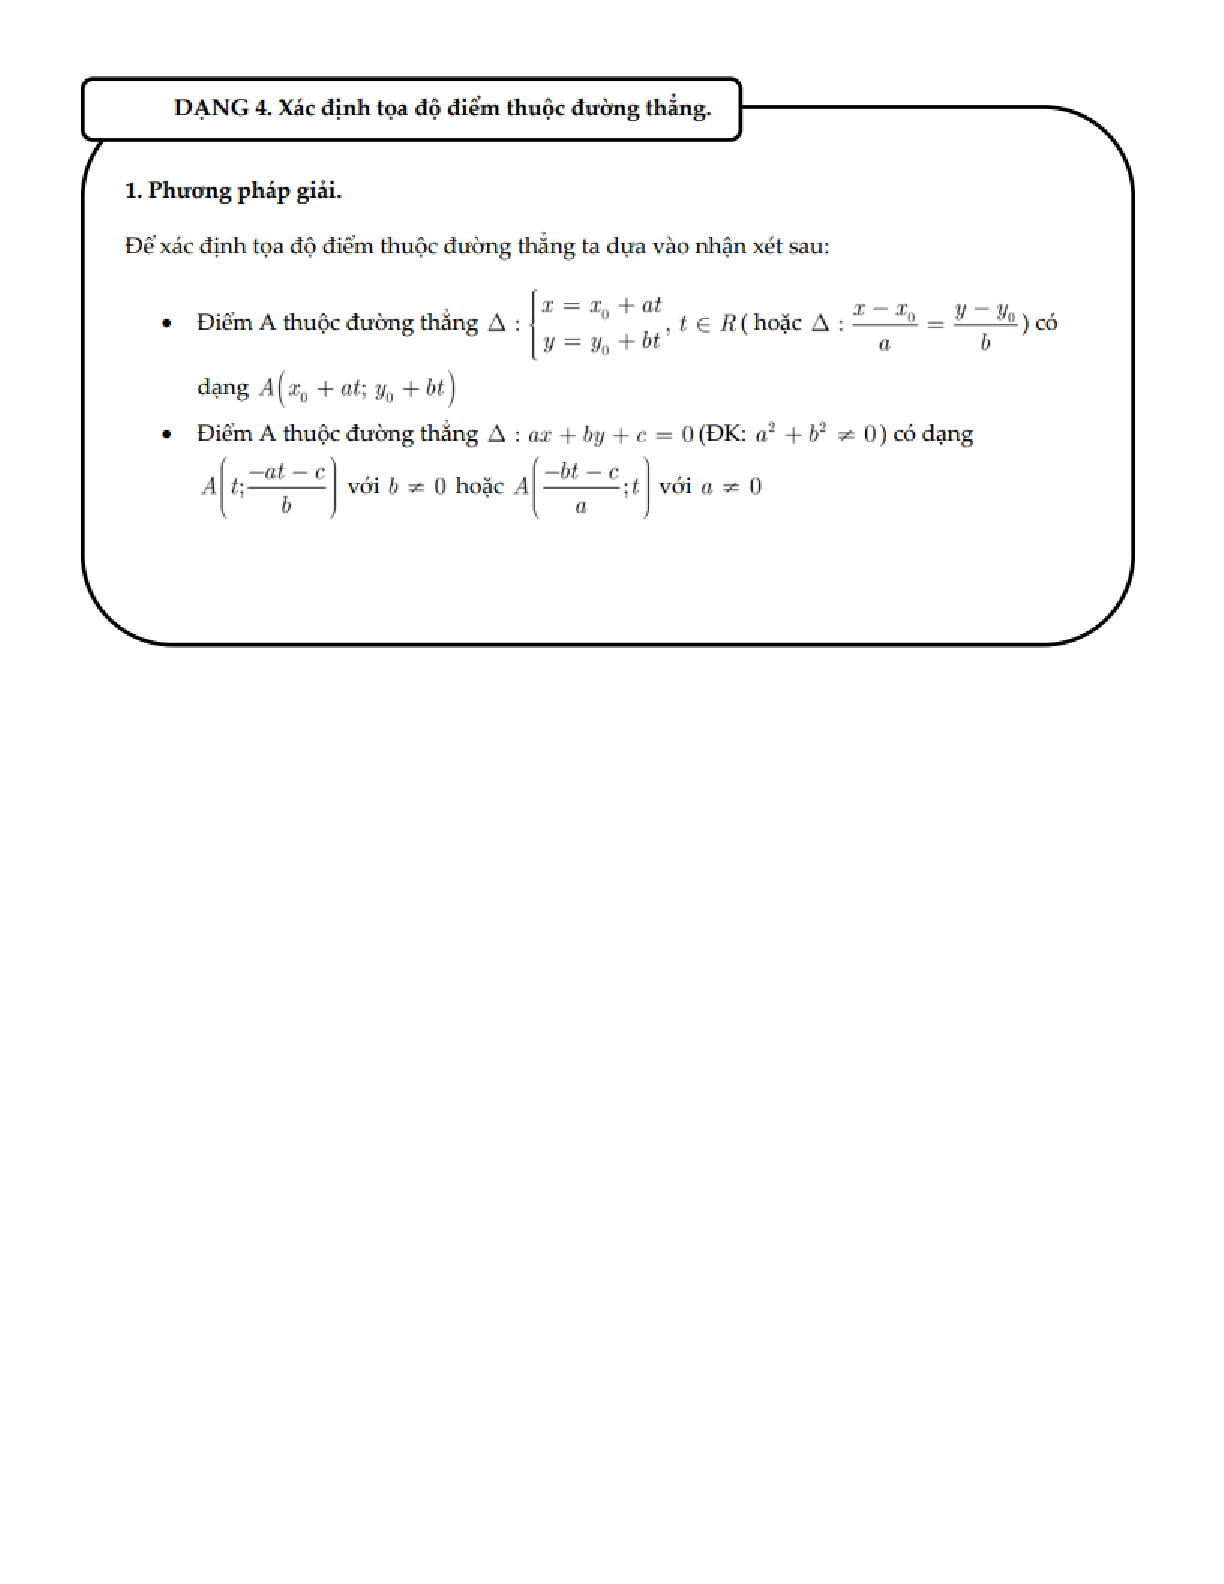 Phương trình đường thằng Toán lớp 10 (trang 6)